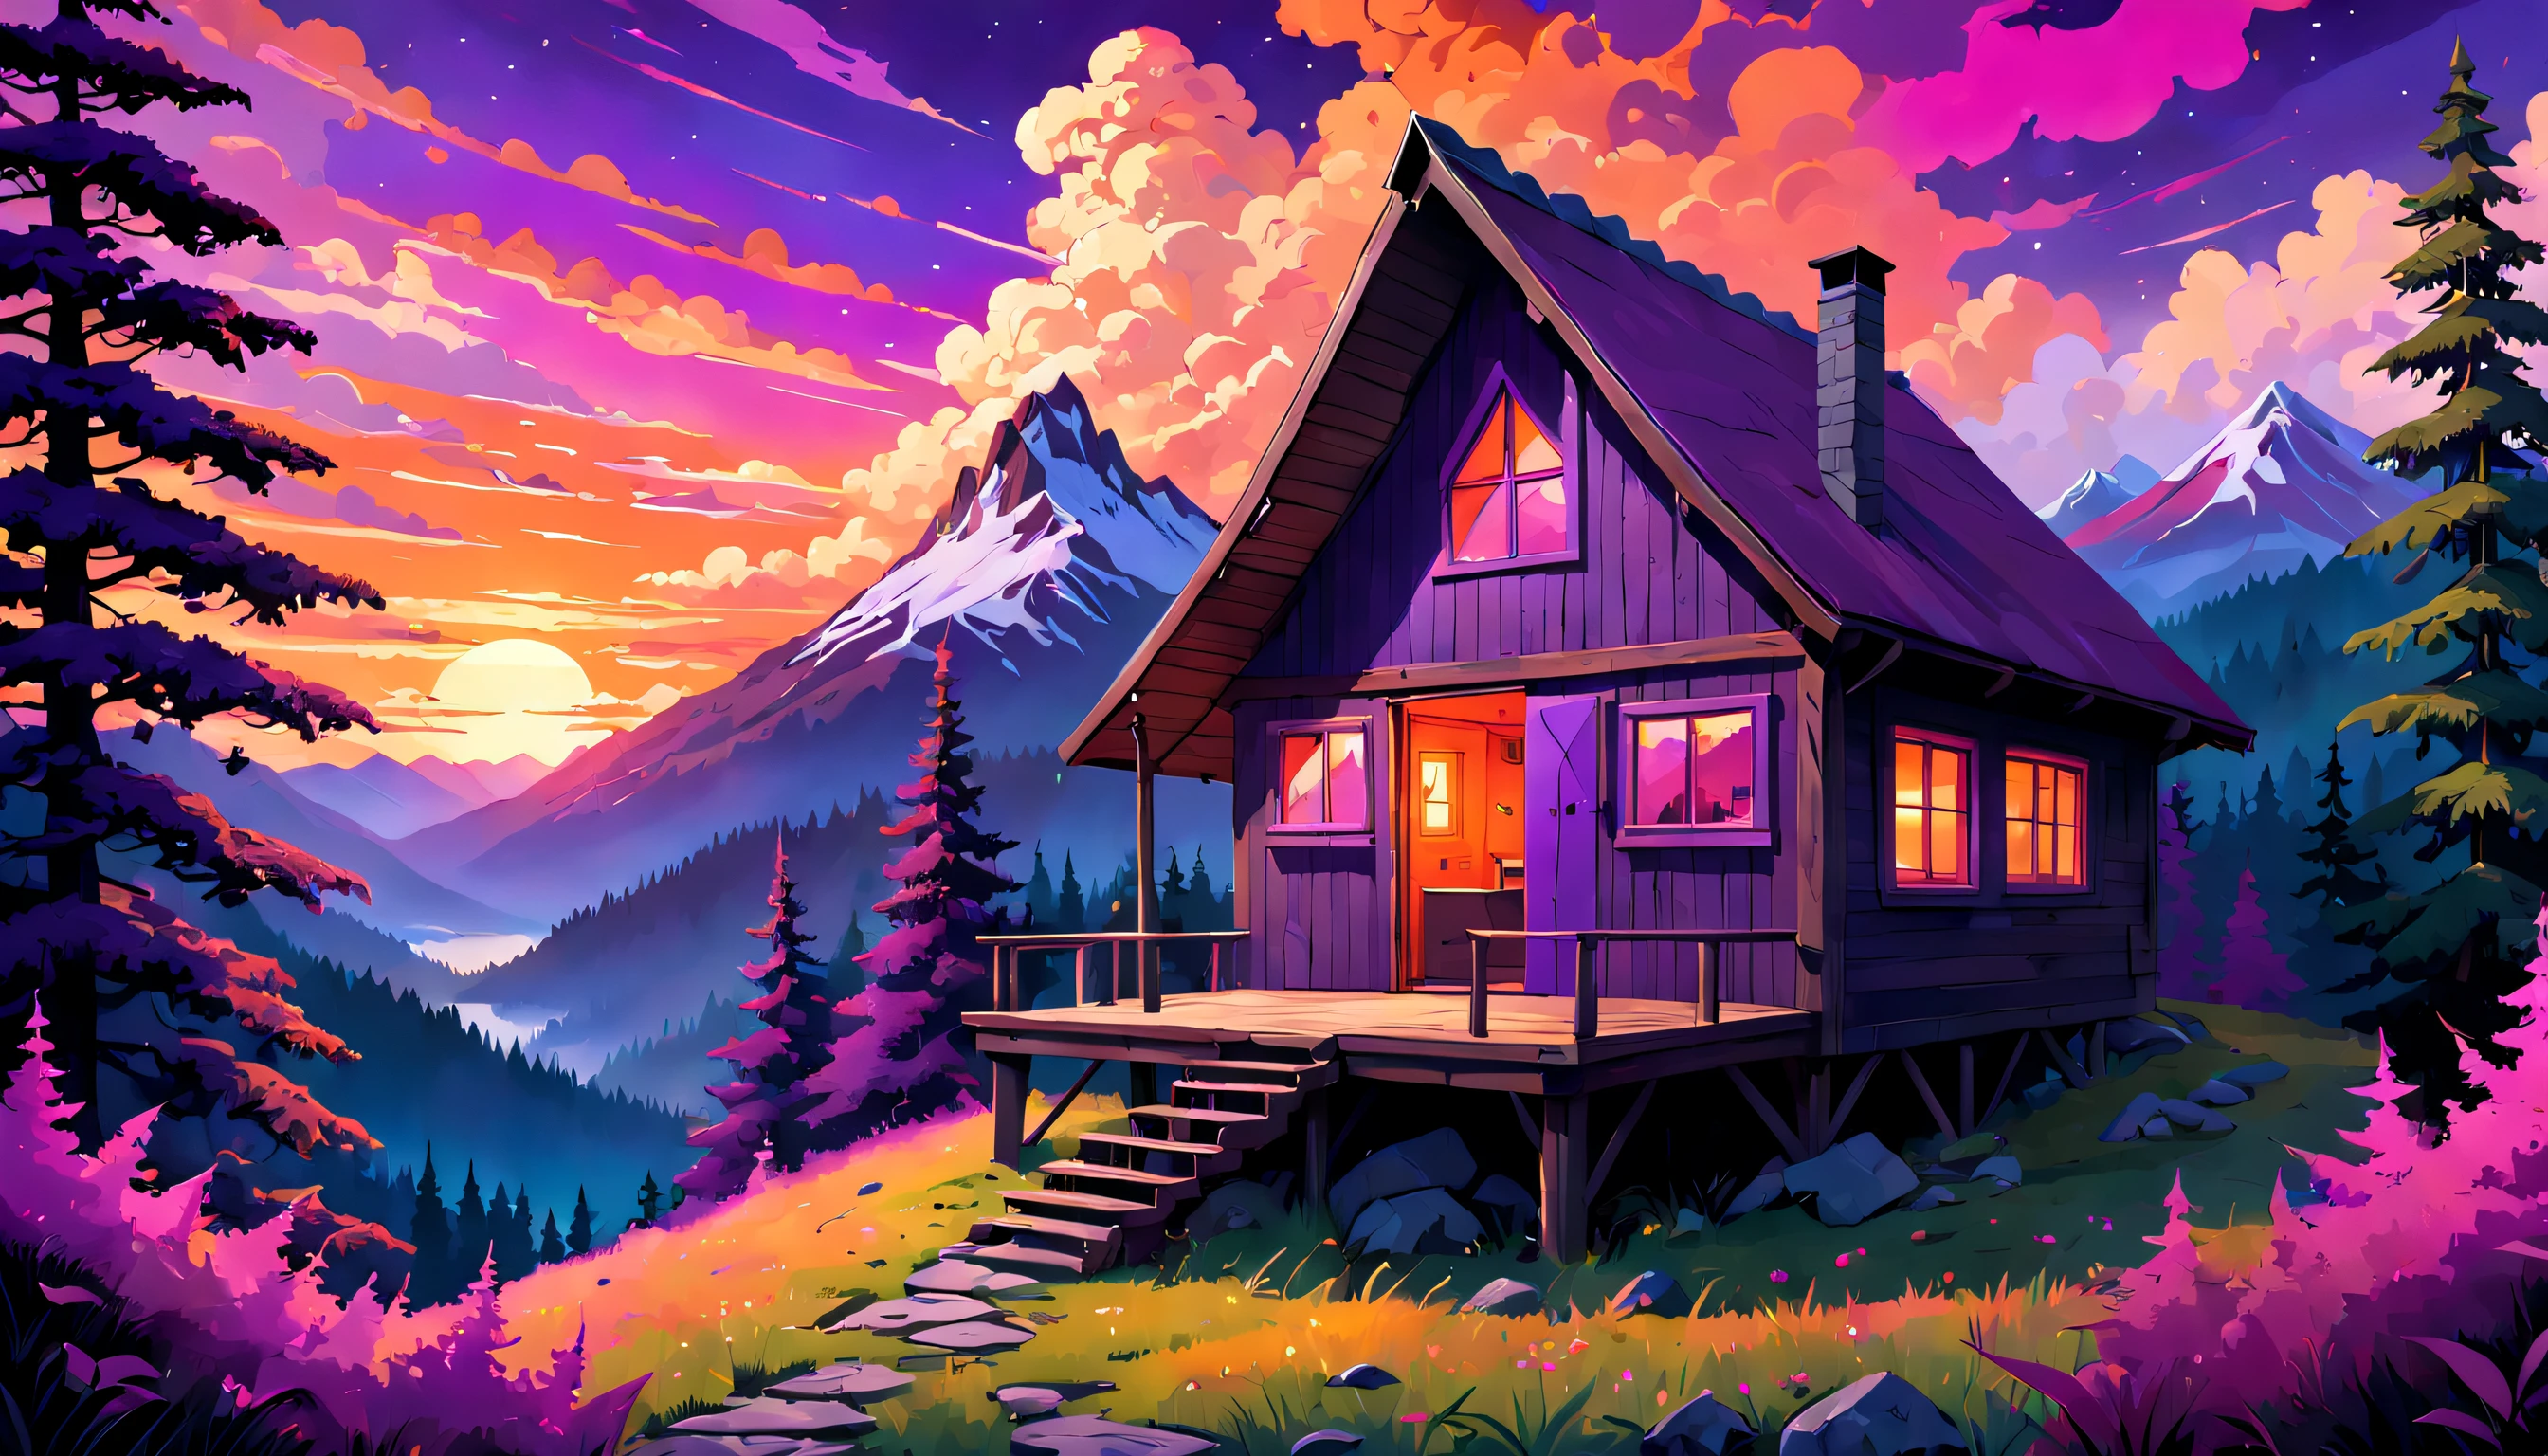 神秘的山间小屋坐落在茂密的, 迷幻森林, 令人惊叹的日落天空投射出充满活力的, 暖色调的紫色, 粉色和橙色, 创造一种好奇和好奇的氛围.